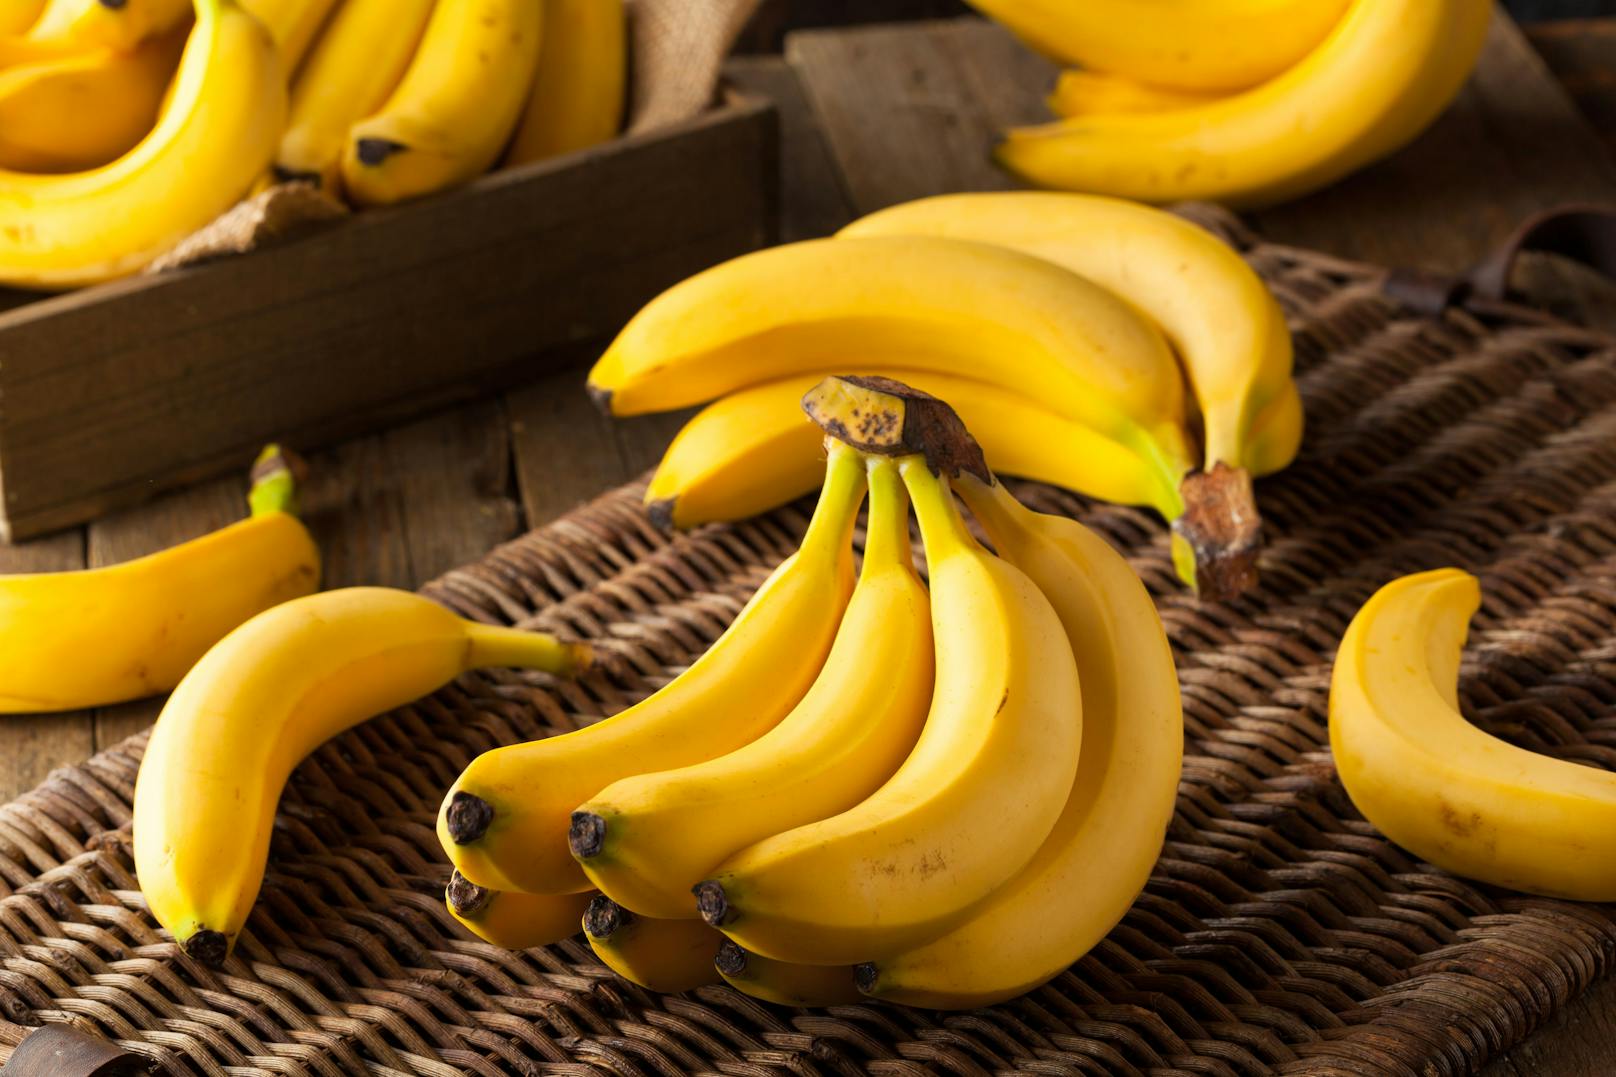 Viele Menschen legen Bananen in den Kühlschrank, damit diese beim Essen schön kalt sind. In der Kälte verfärben sie sich aber viel schneller braun.